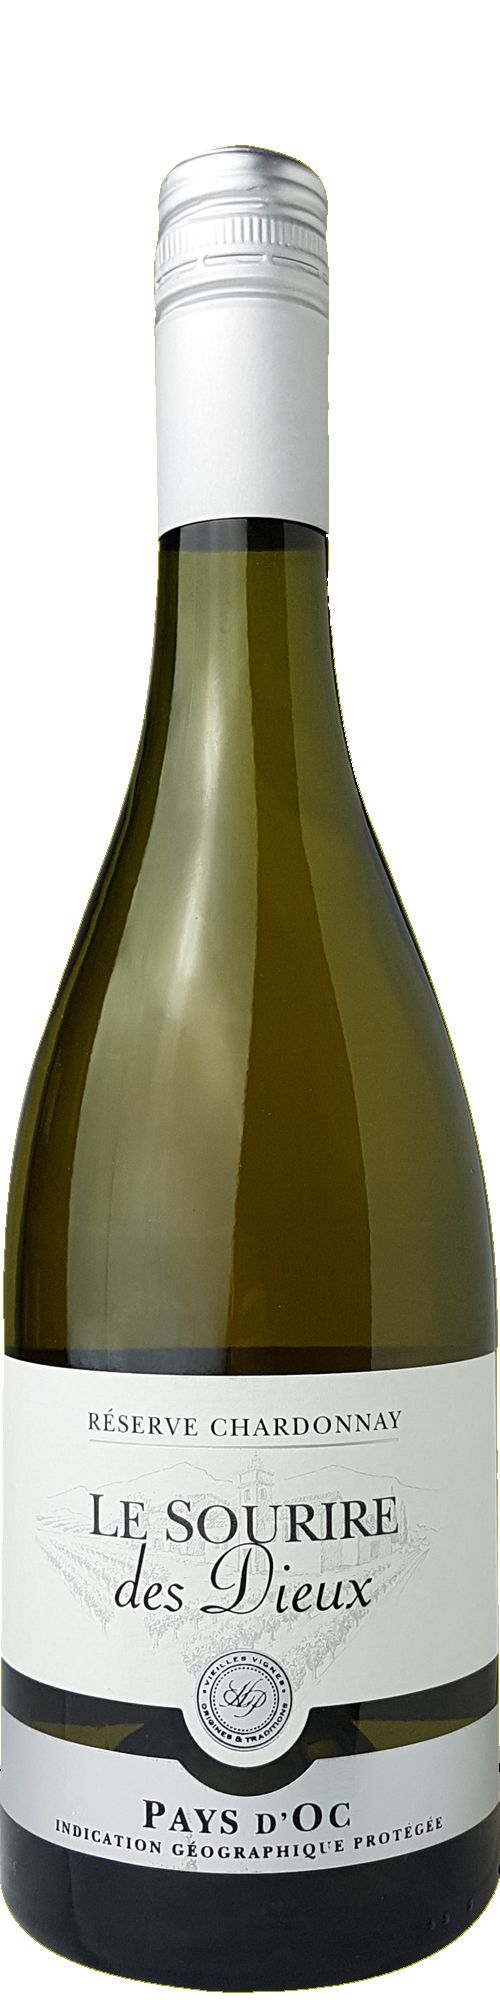 Le Sourire des Dieux Chardonnay Réserve Pays d' Oc IGP Vieilles Vignes